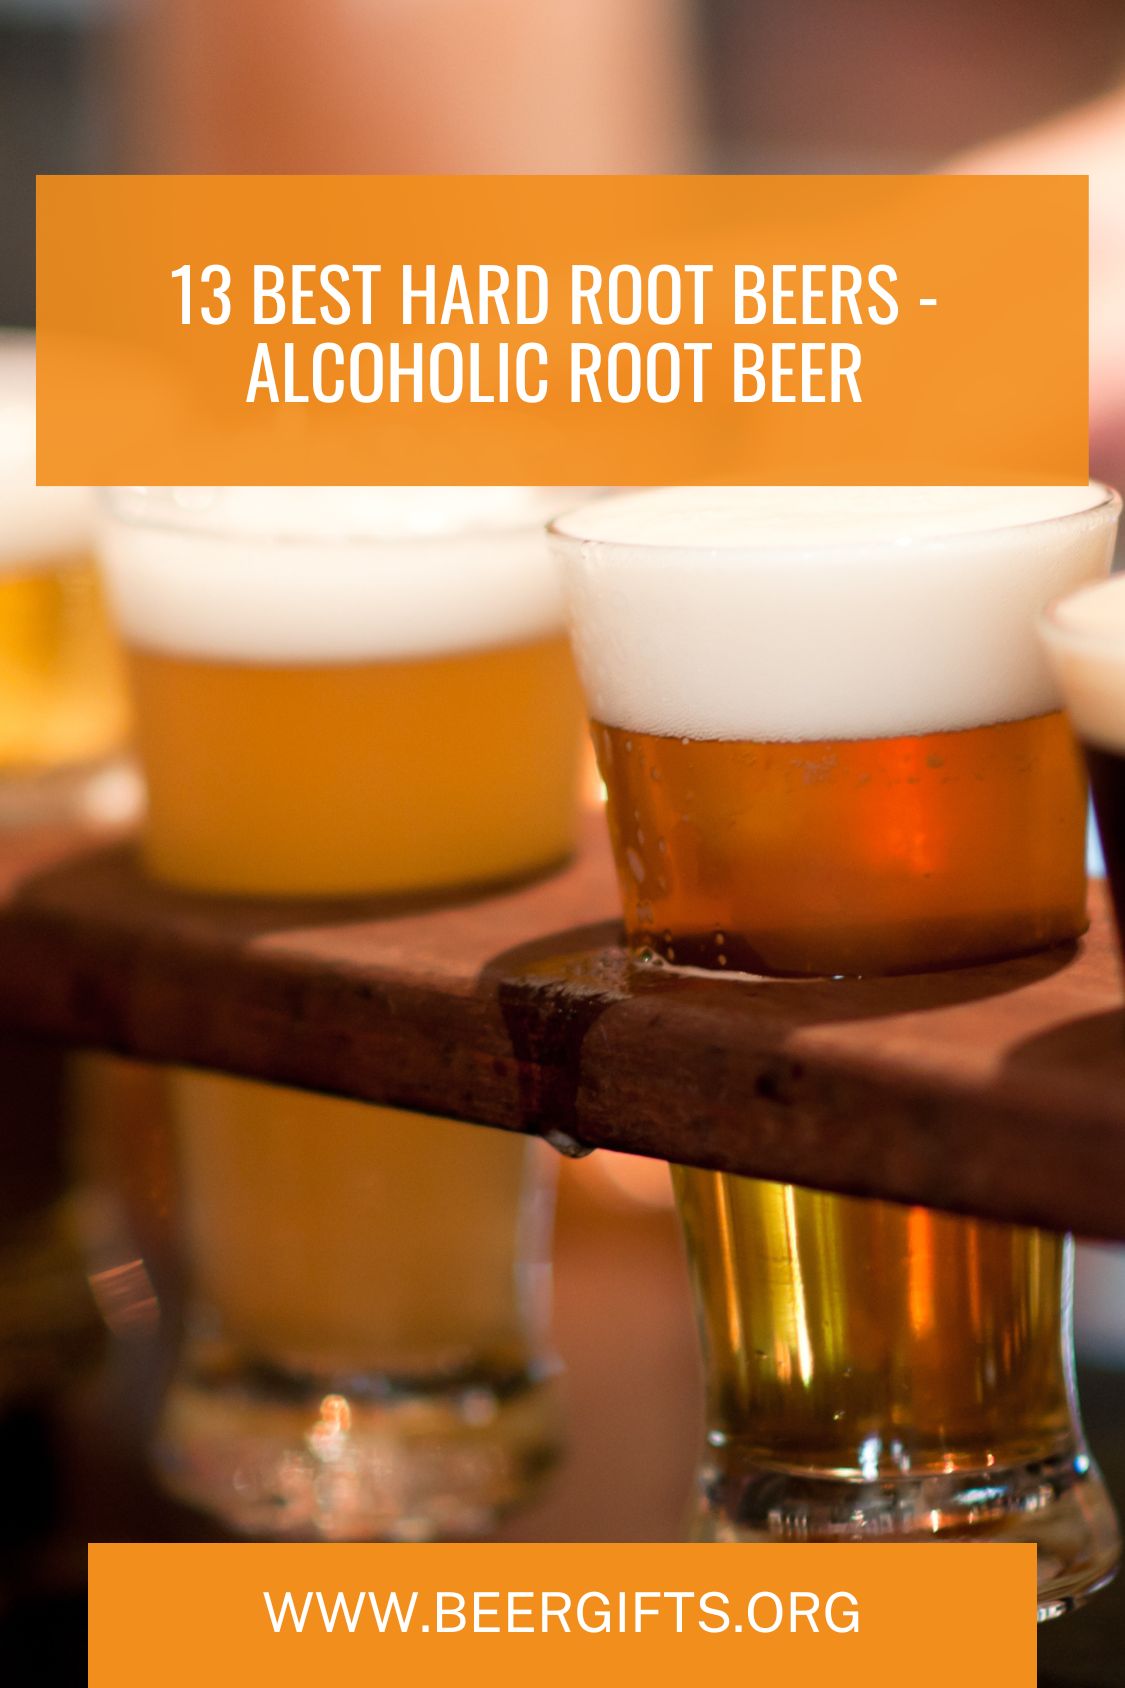 13 Best Hard Root Beers - Alcoholic Root Beer14